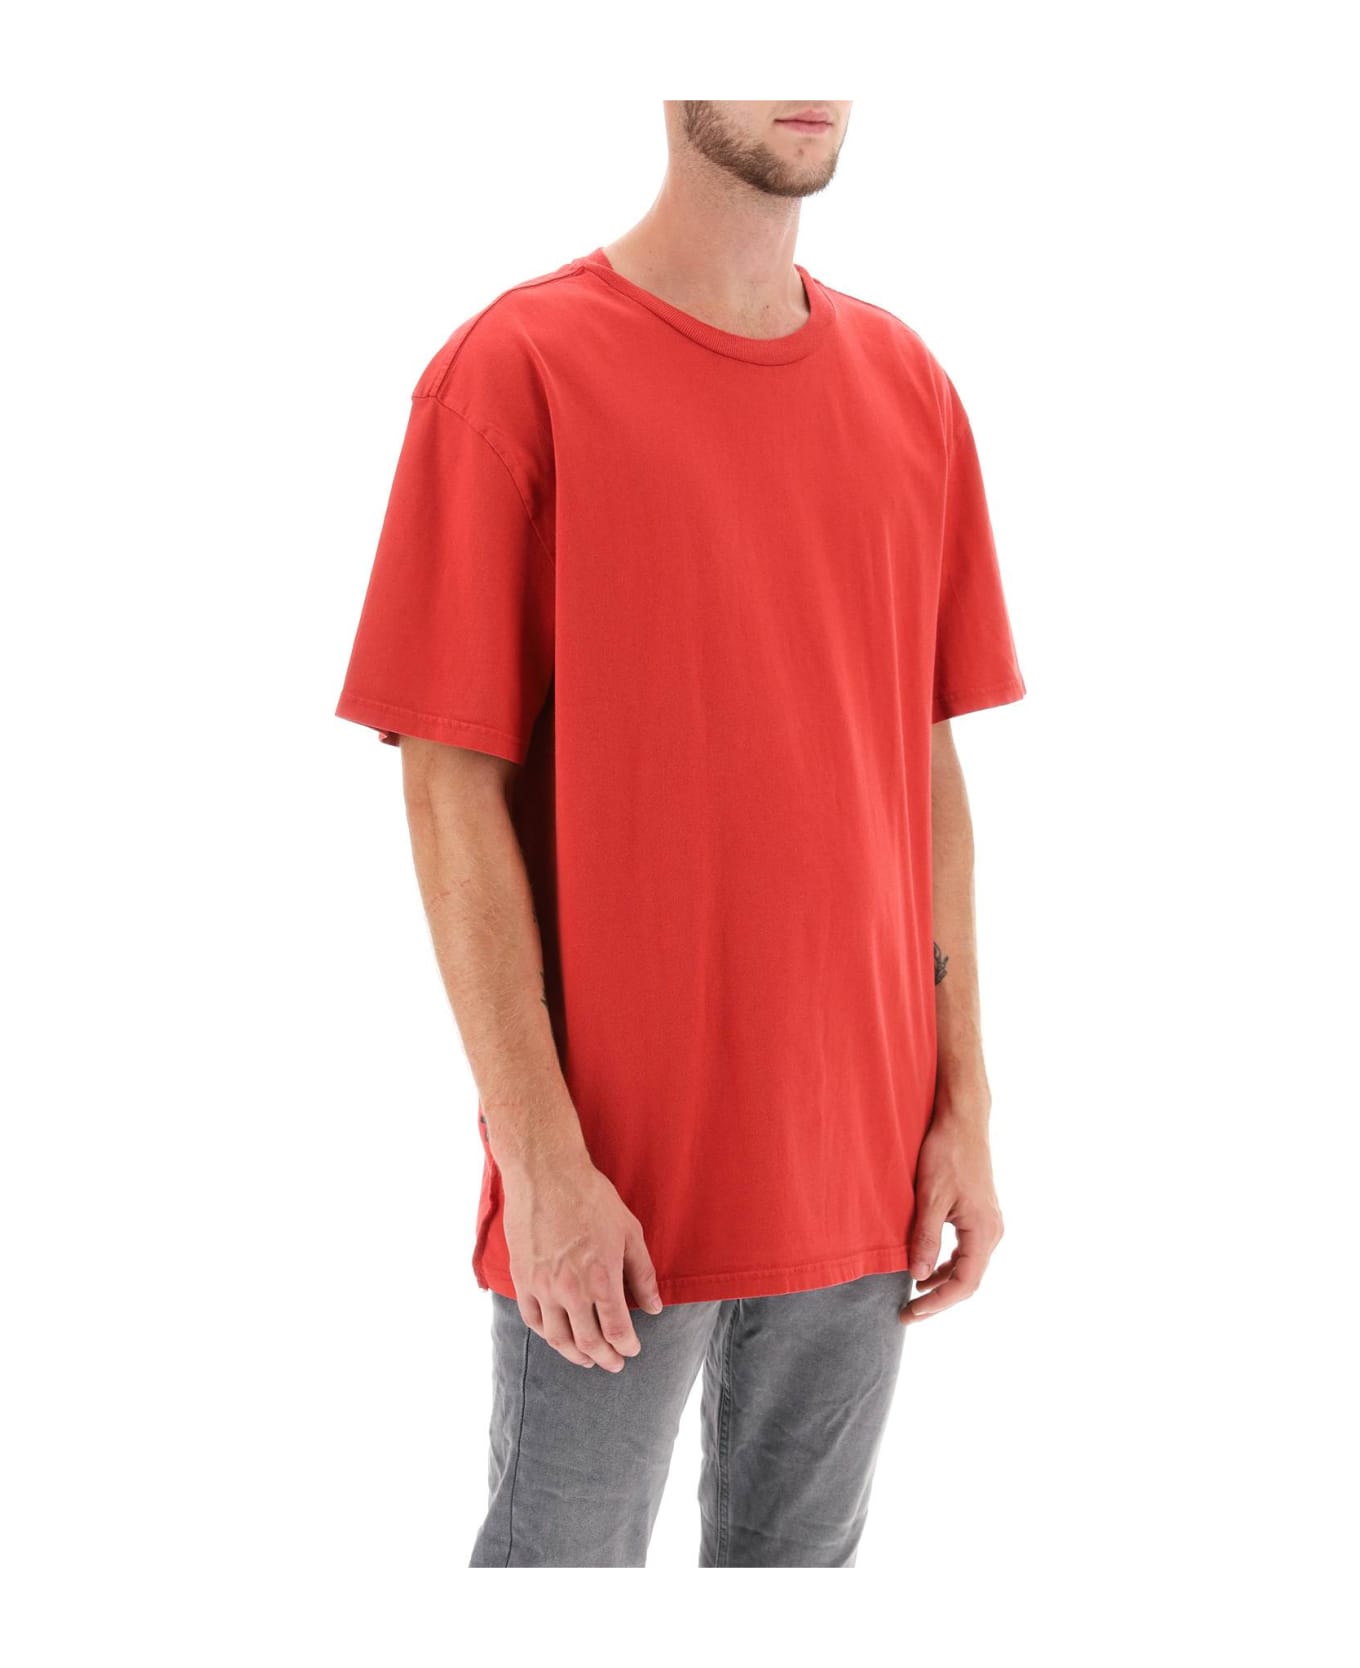 Ksubi '4x4 Biggie' T-shirt - RED (Red)